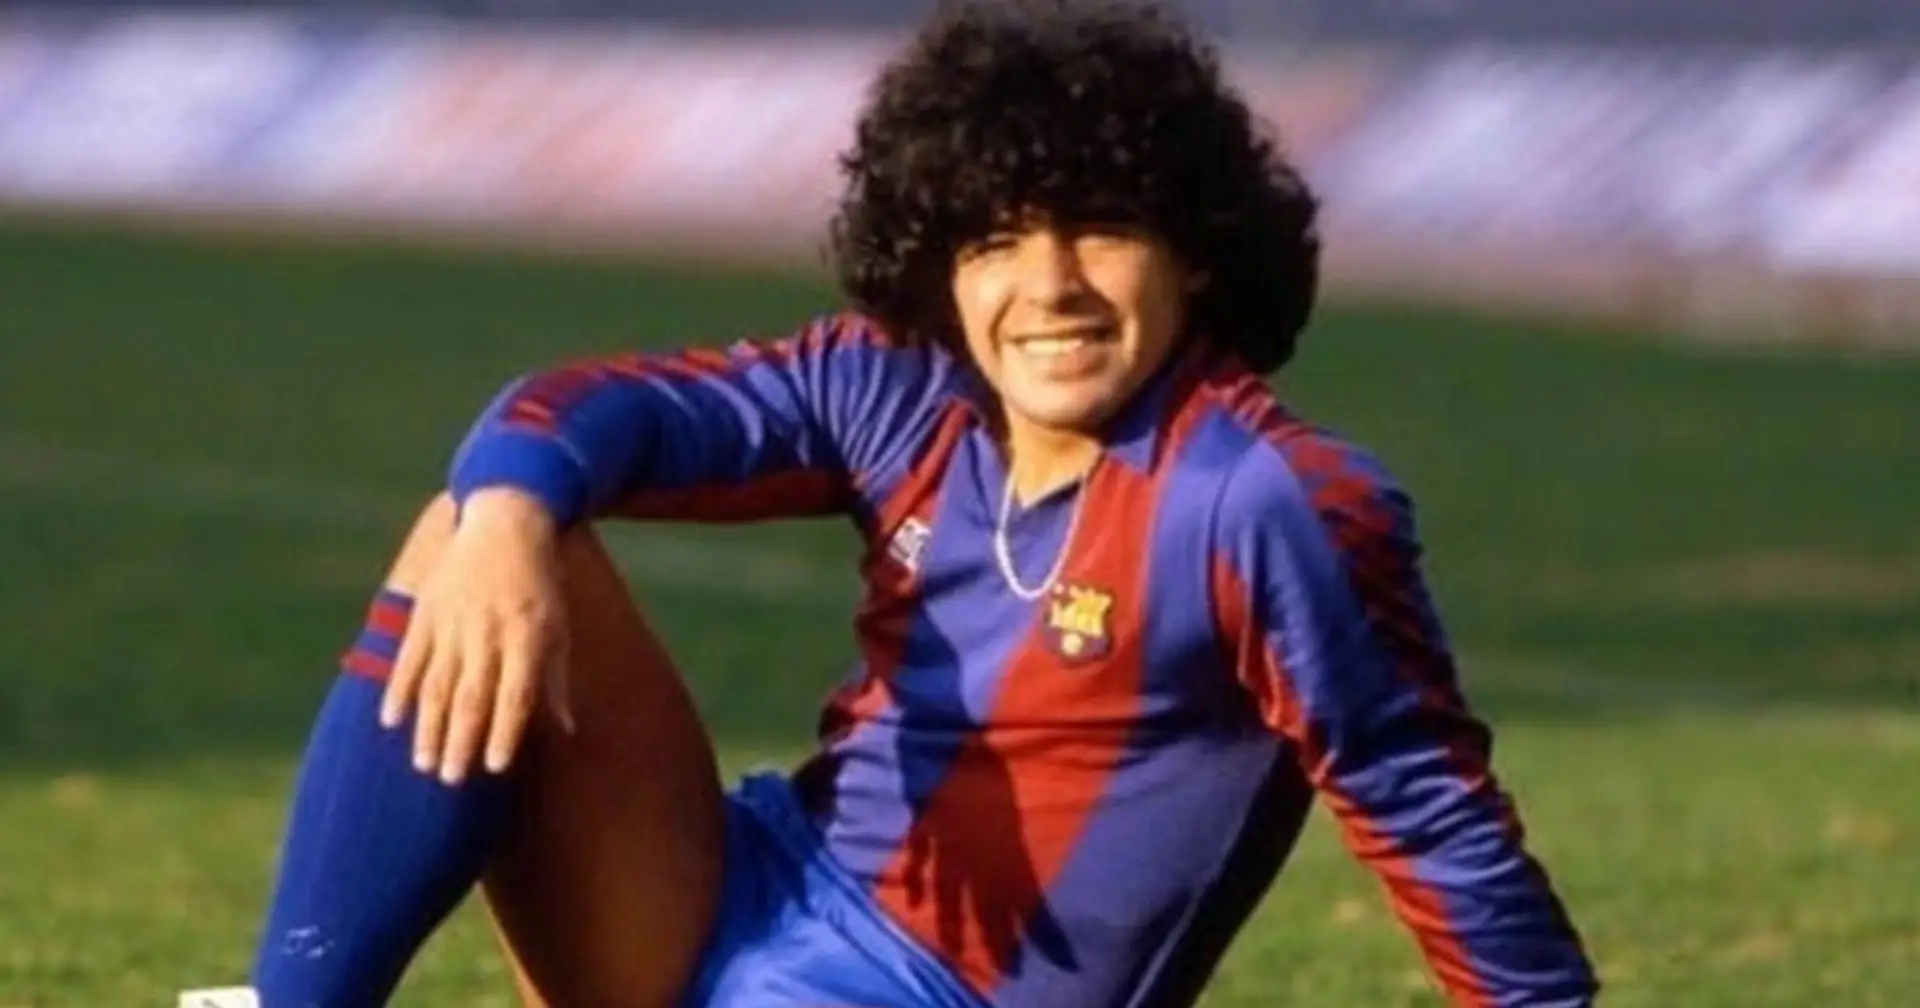 "Force mentale 10. Égoïsme 0": Un rapport d'un recruteur sur Diego Maradona à 17 ans prouve à quel point il était doué même à un jeune âge